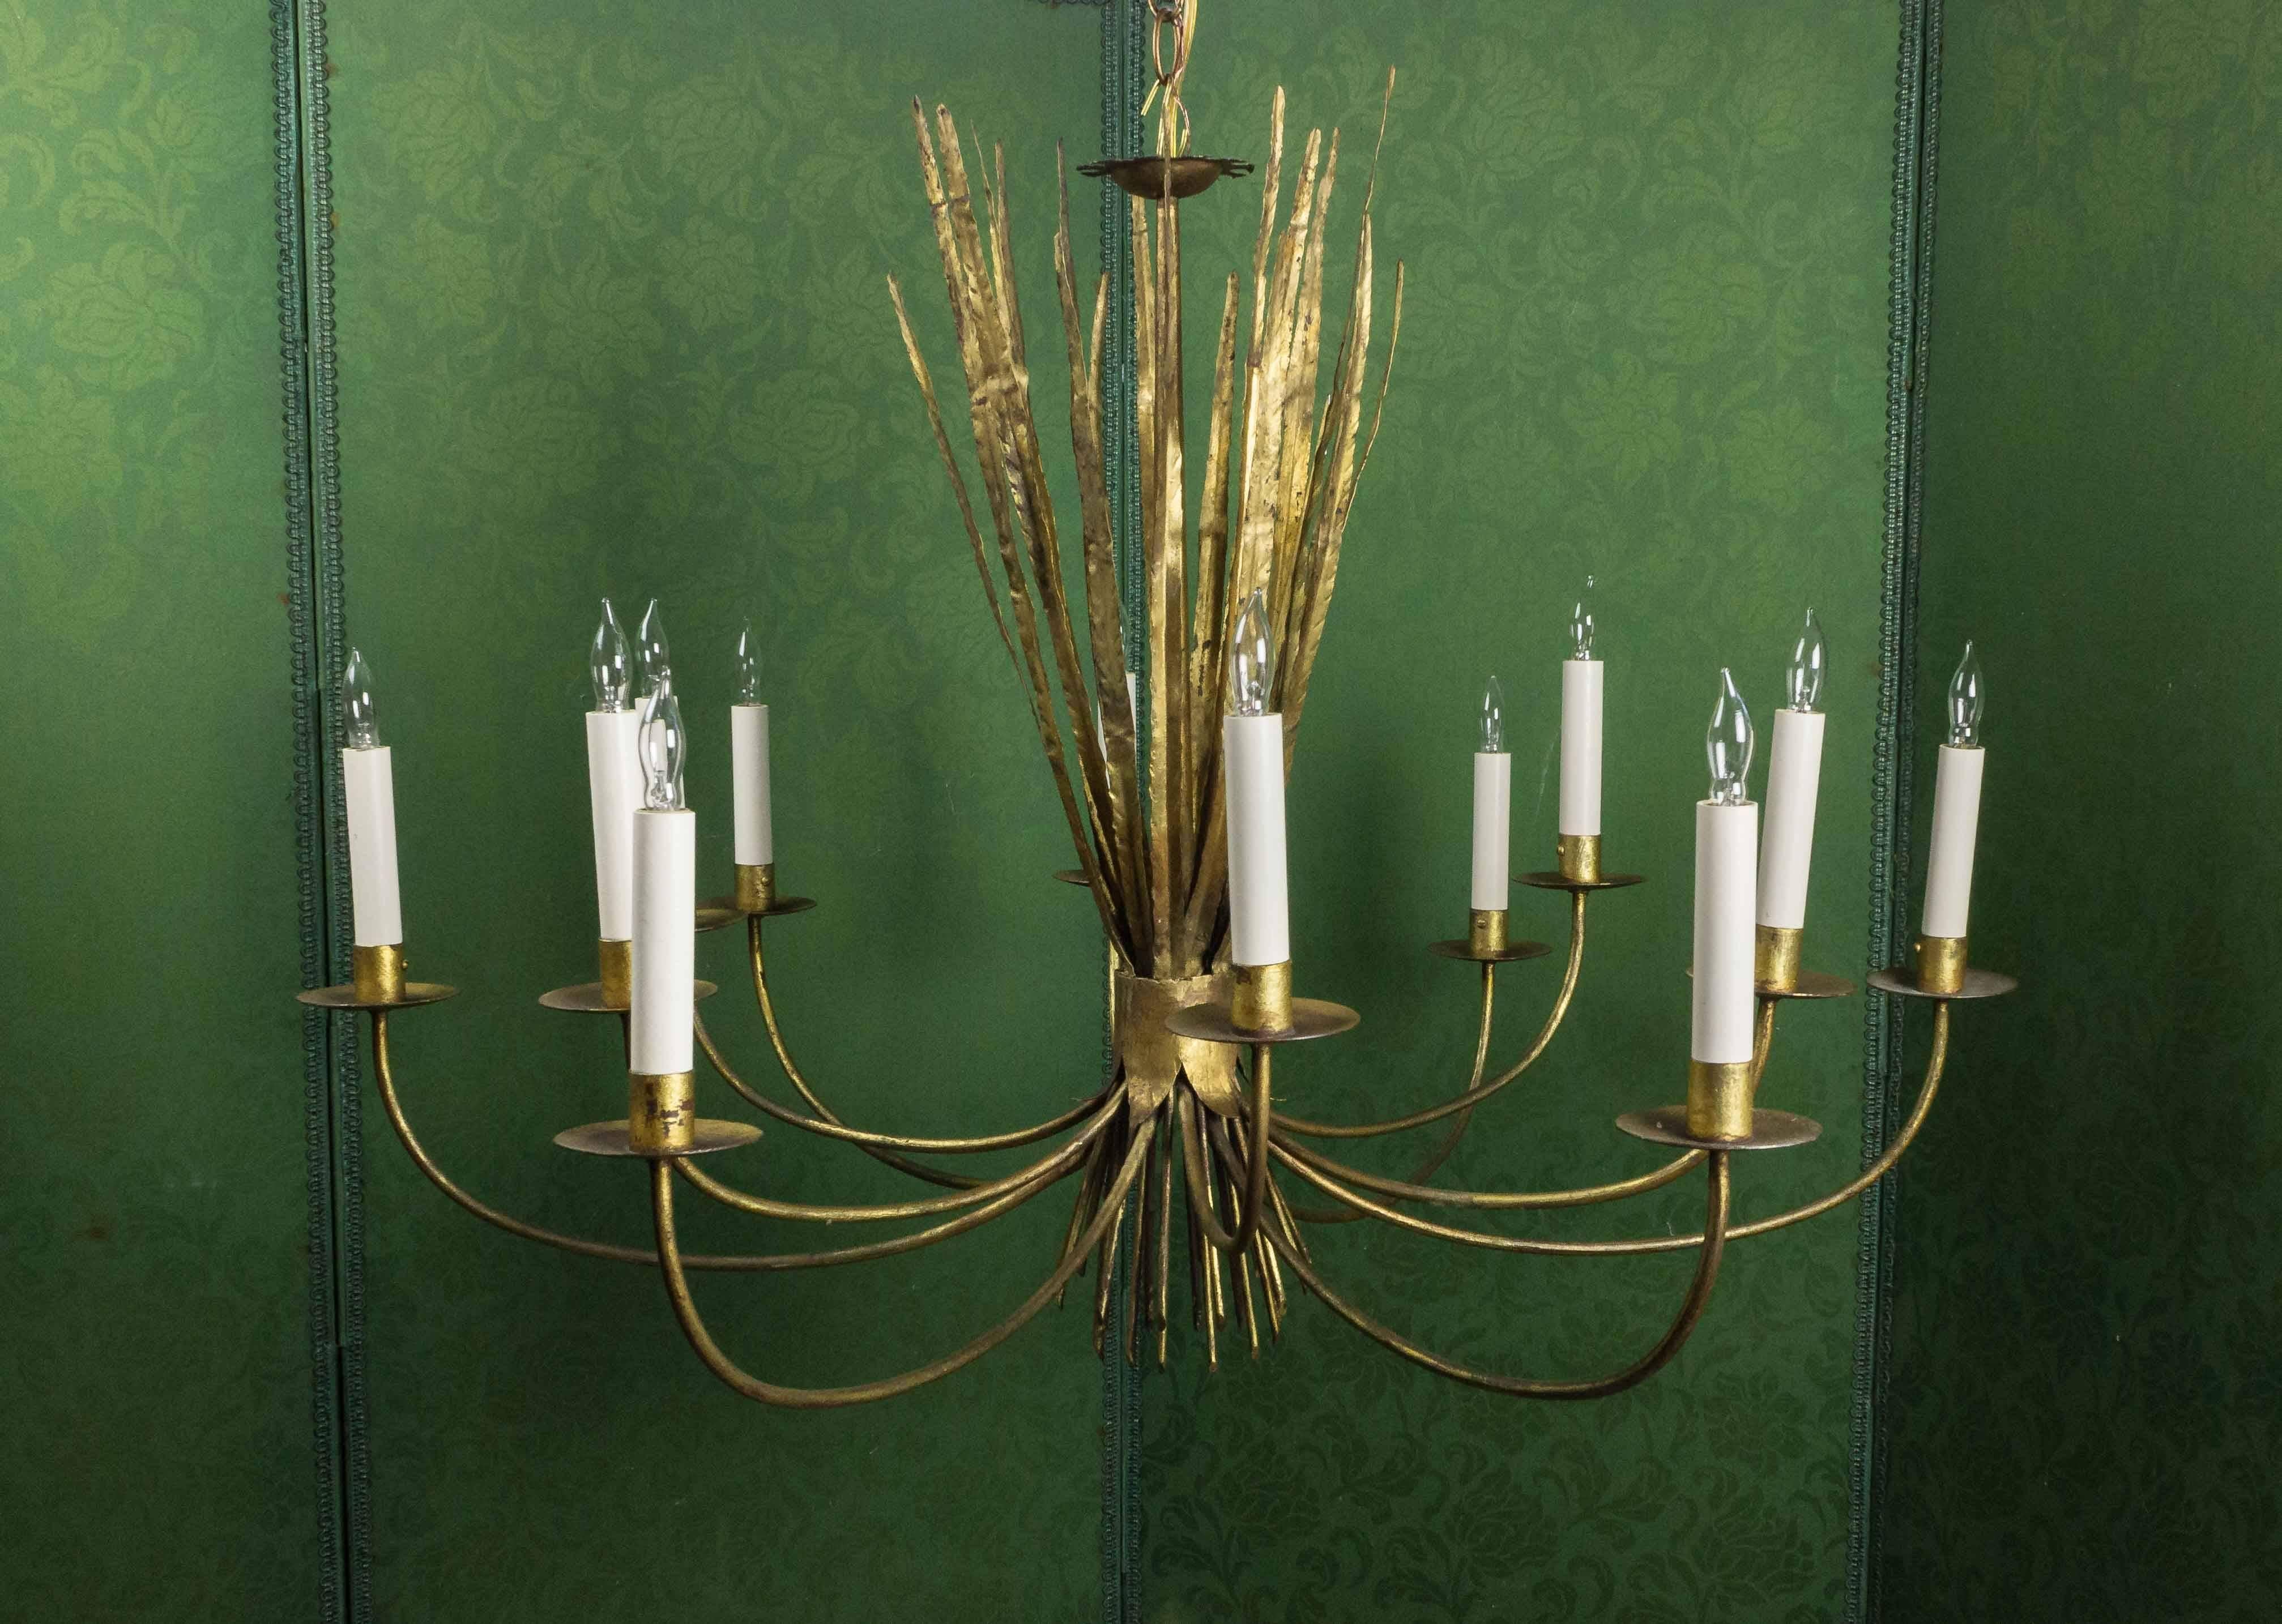 Ce lustre unique à douze branches en métal doré espagnol des années 1940 est stupéfiant. Avec son délicat motif d'herbe de blé, ce lustre est à la fois charmant et pratique. Récemment câblée par des professionnels et dotée d'un nouveau baldaquin,